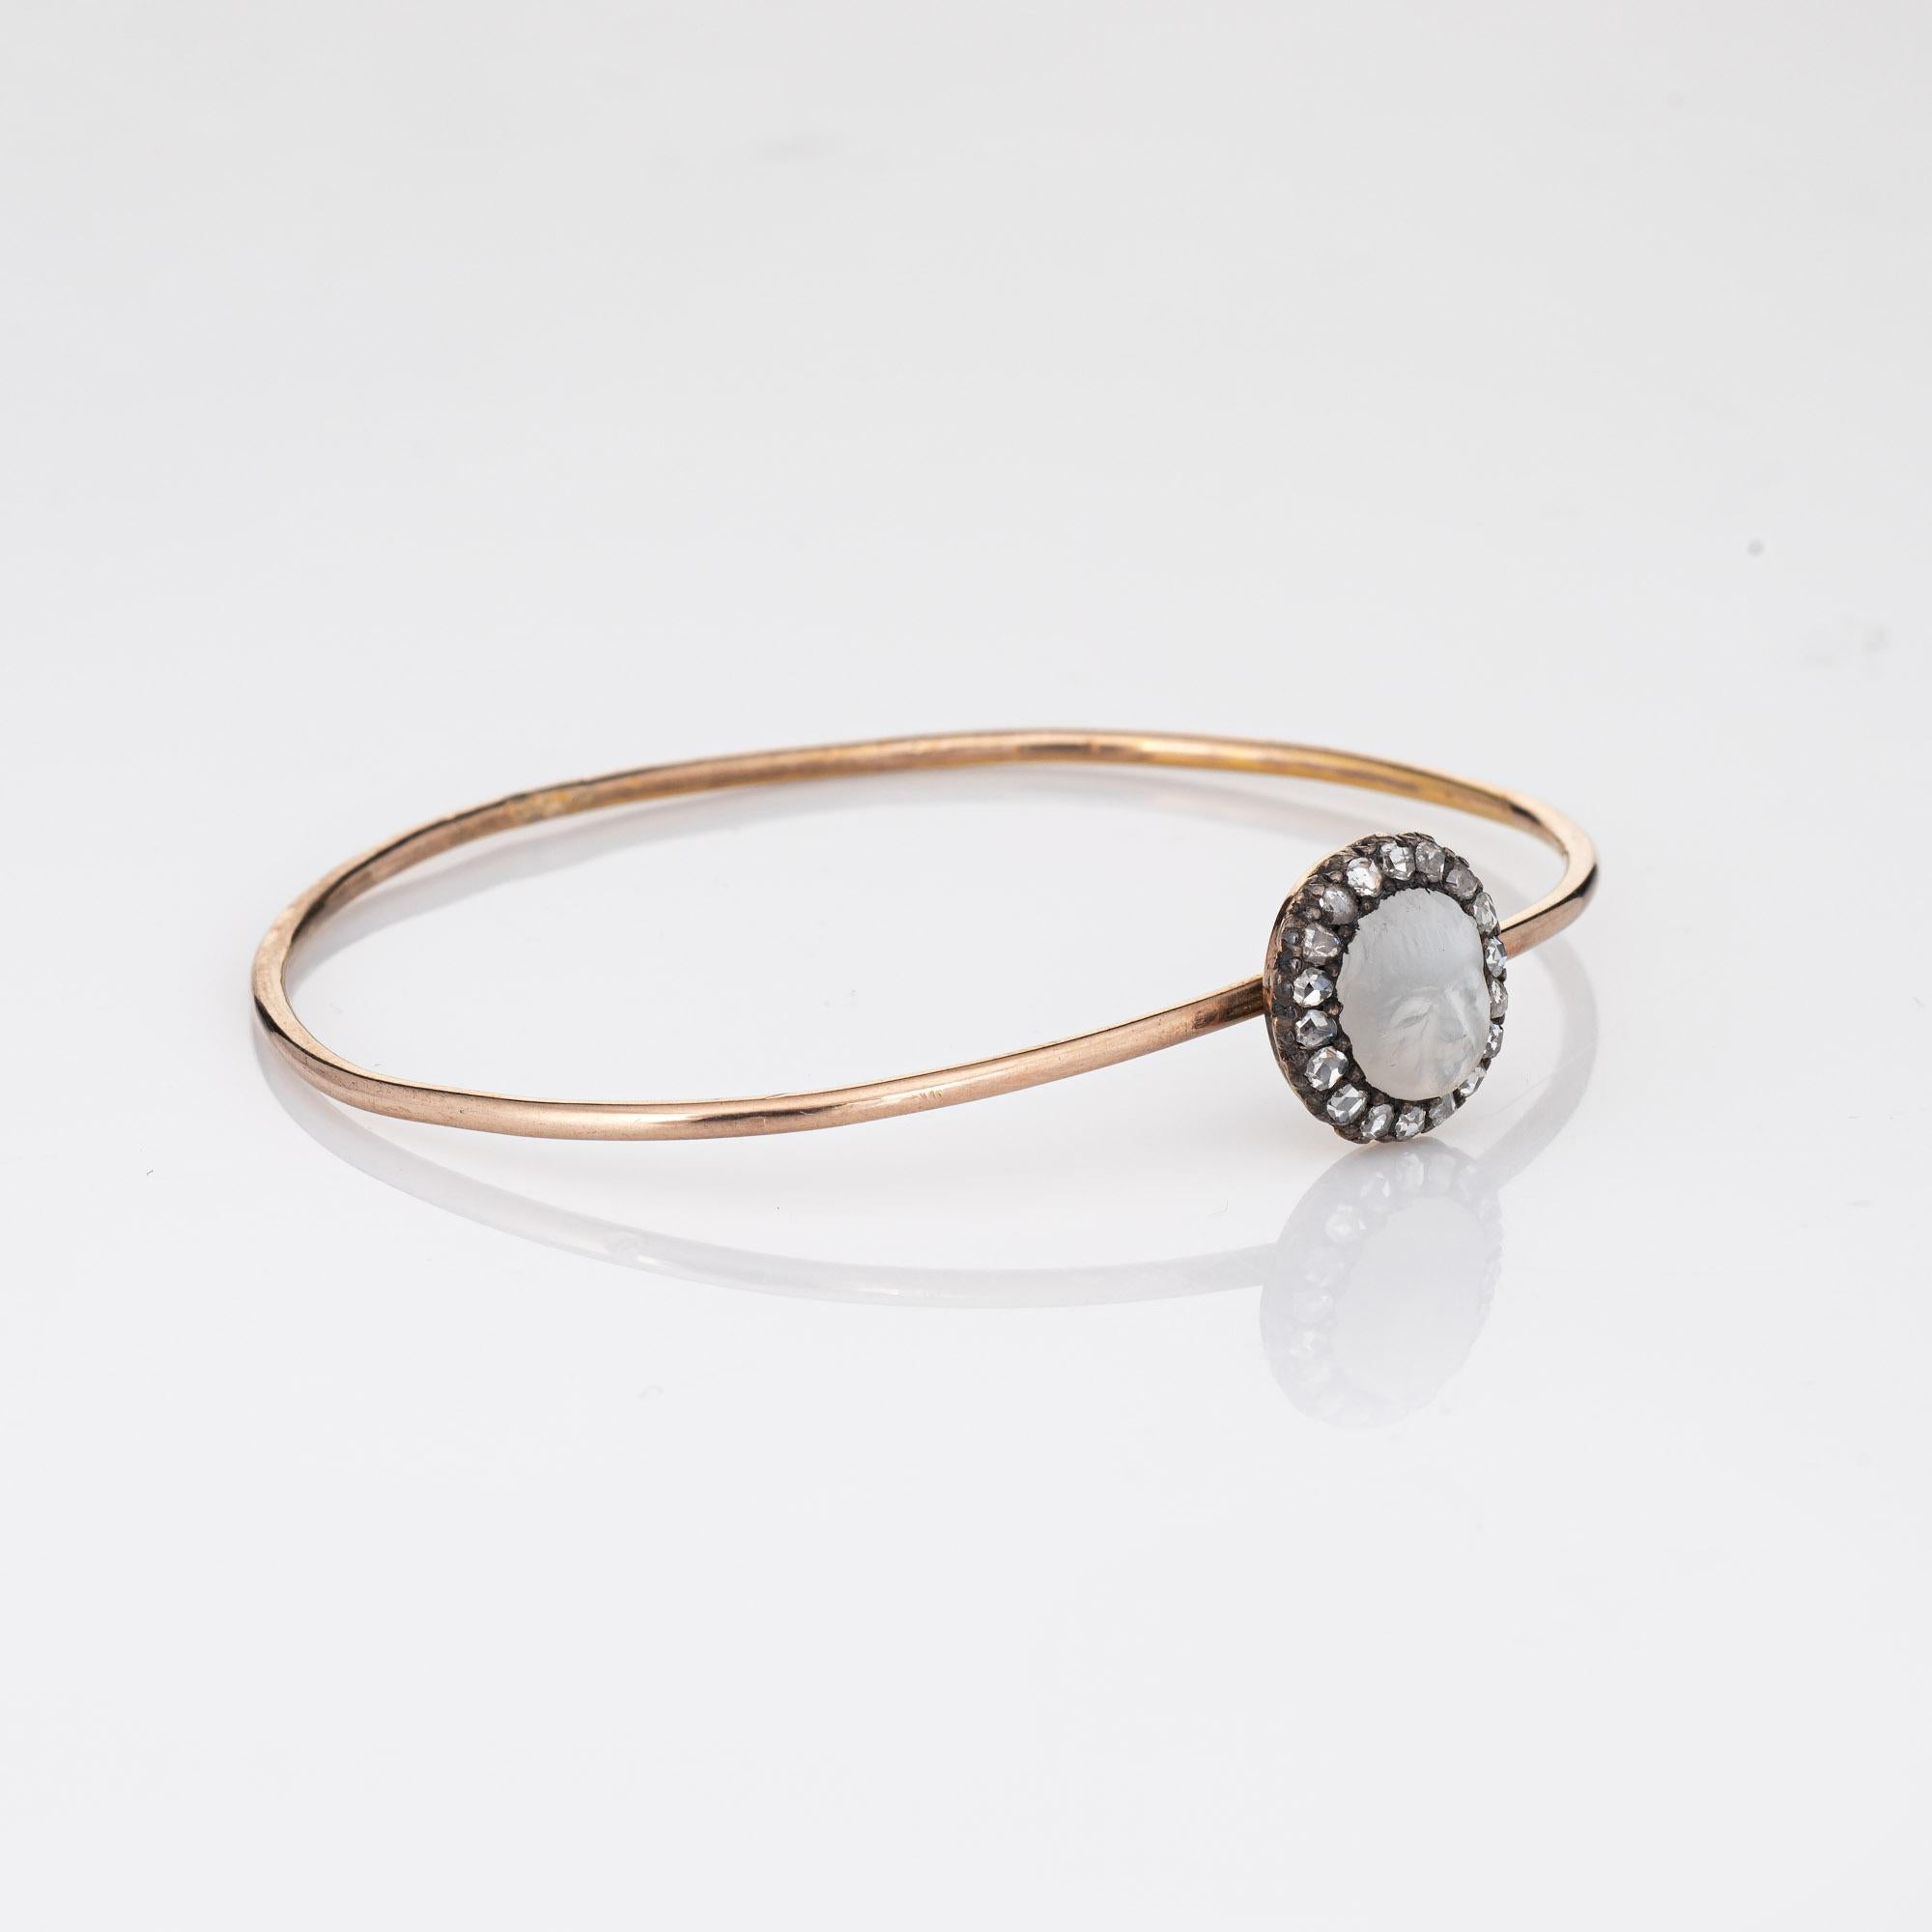 Bracelet de pierres de lune et de diamants en or jaune 9k (circa 1880s to 1900s). 

La pierre de lune sculptée mesure 8,5 mm x 7 mm et est rehaussée de 18 diamants de taille rose ancienne estimés à 0,03 carat. Le poids total des diamants est estimé